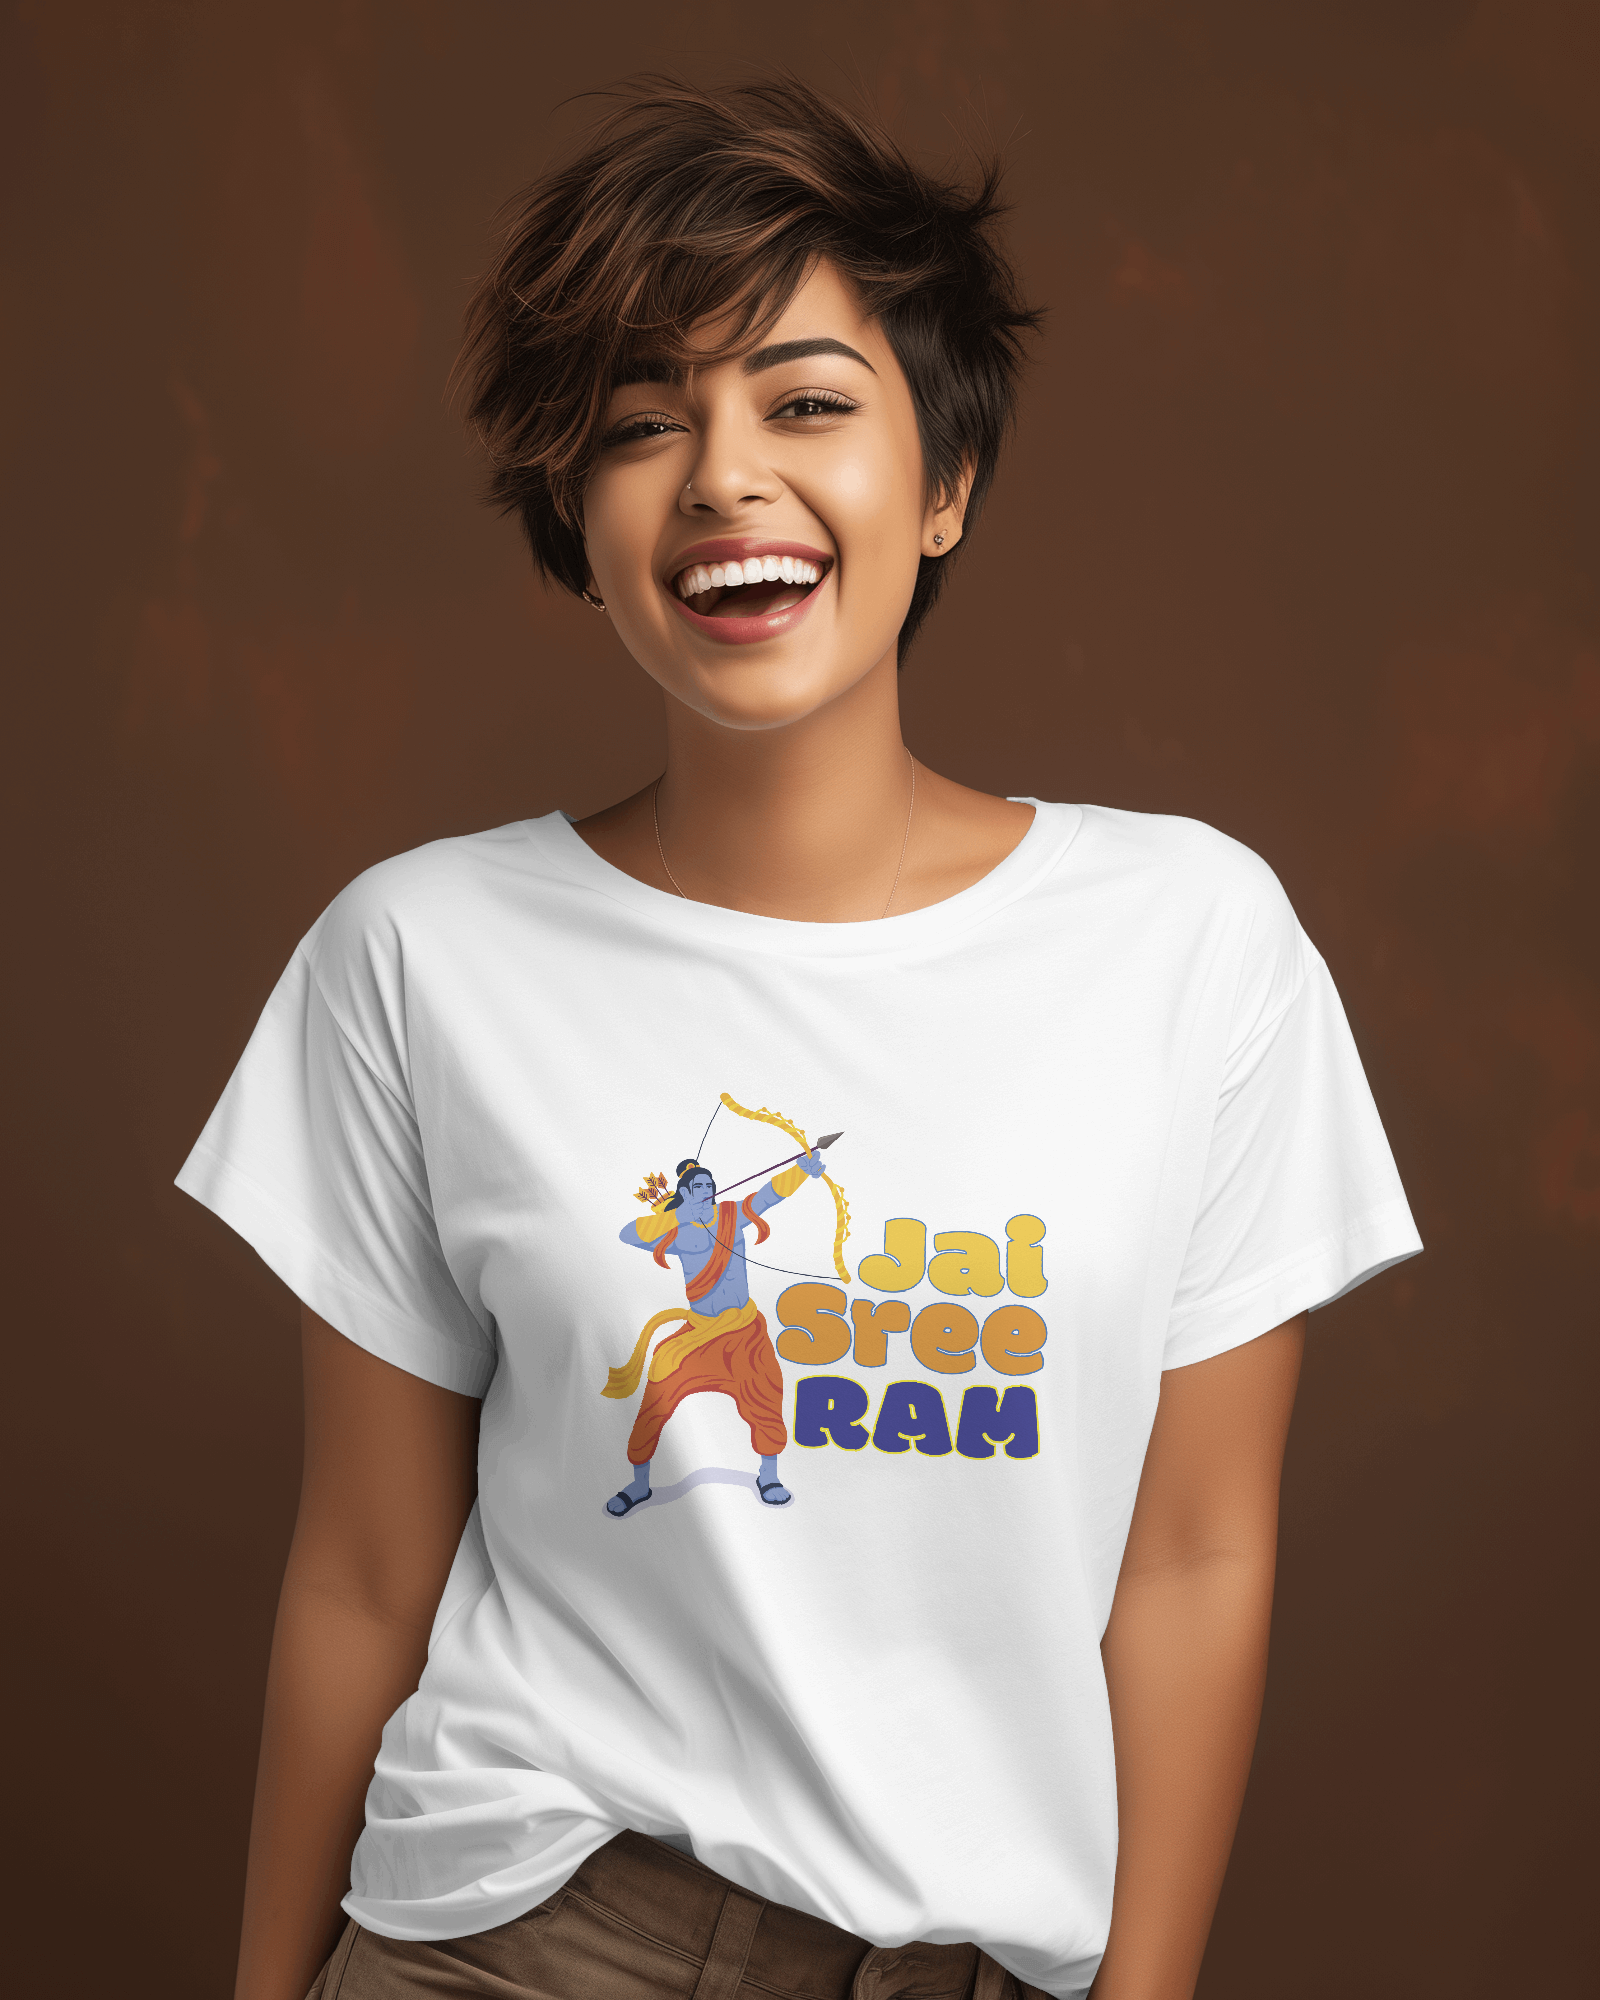 Jai Shree Ram Printed Tshirt for Women